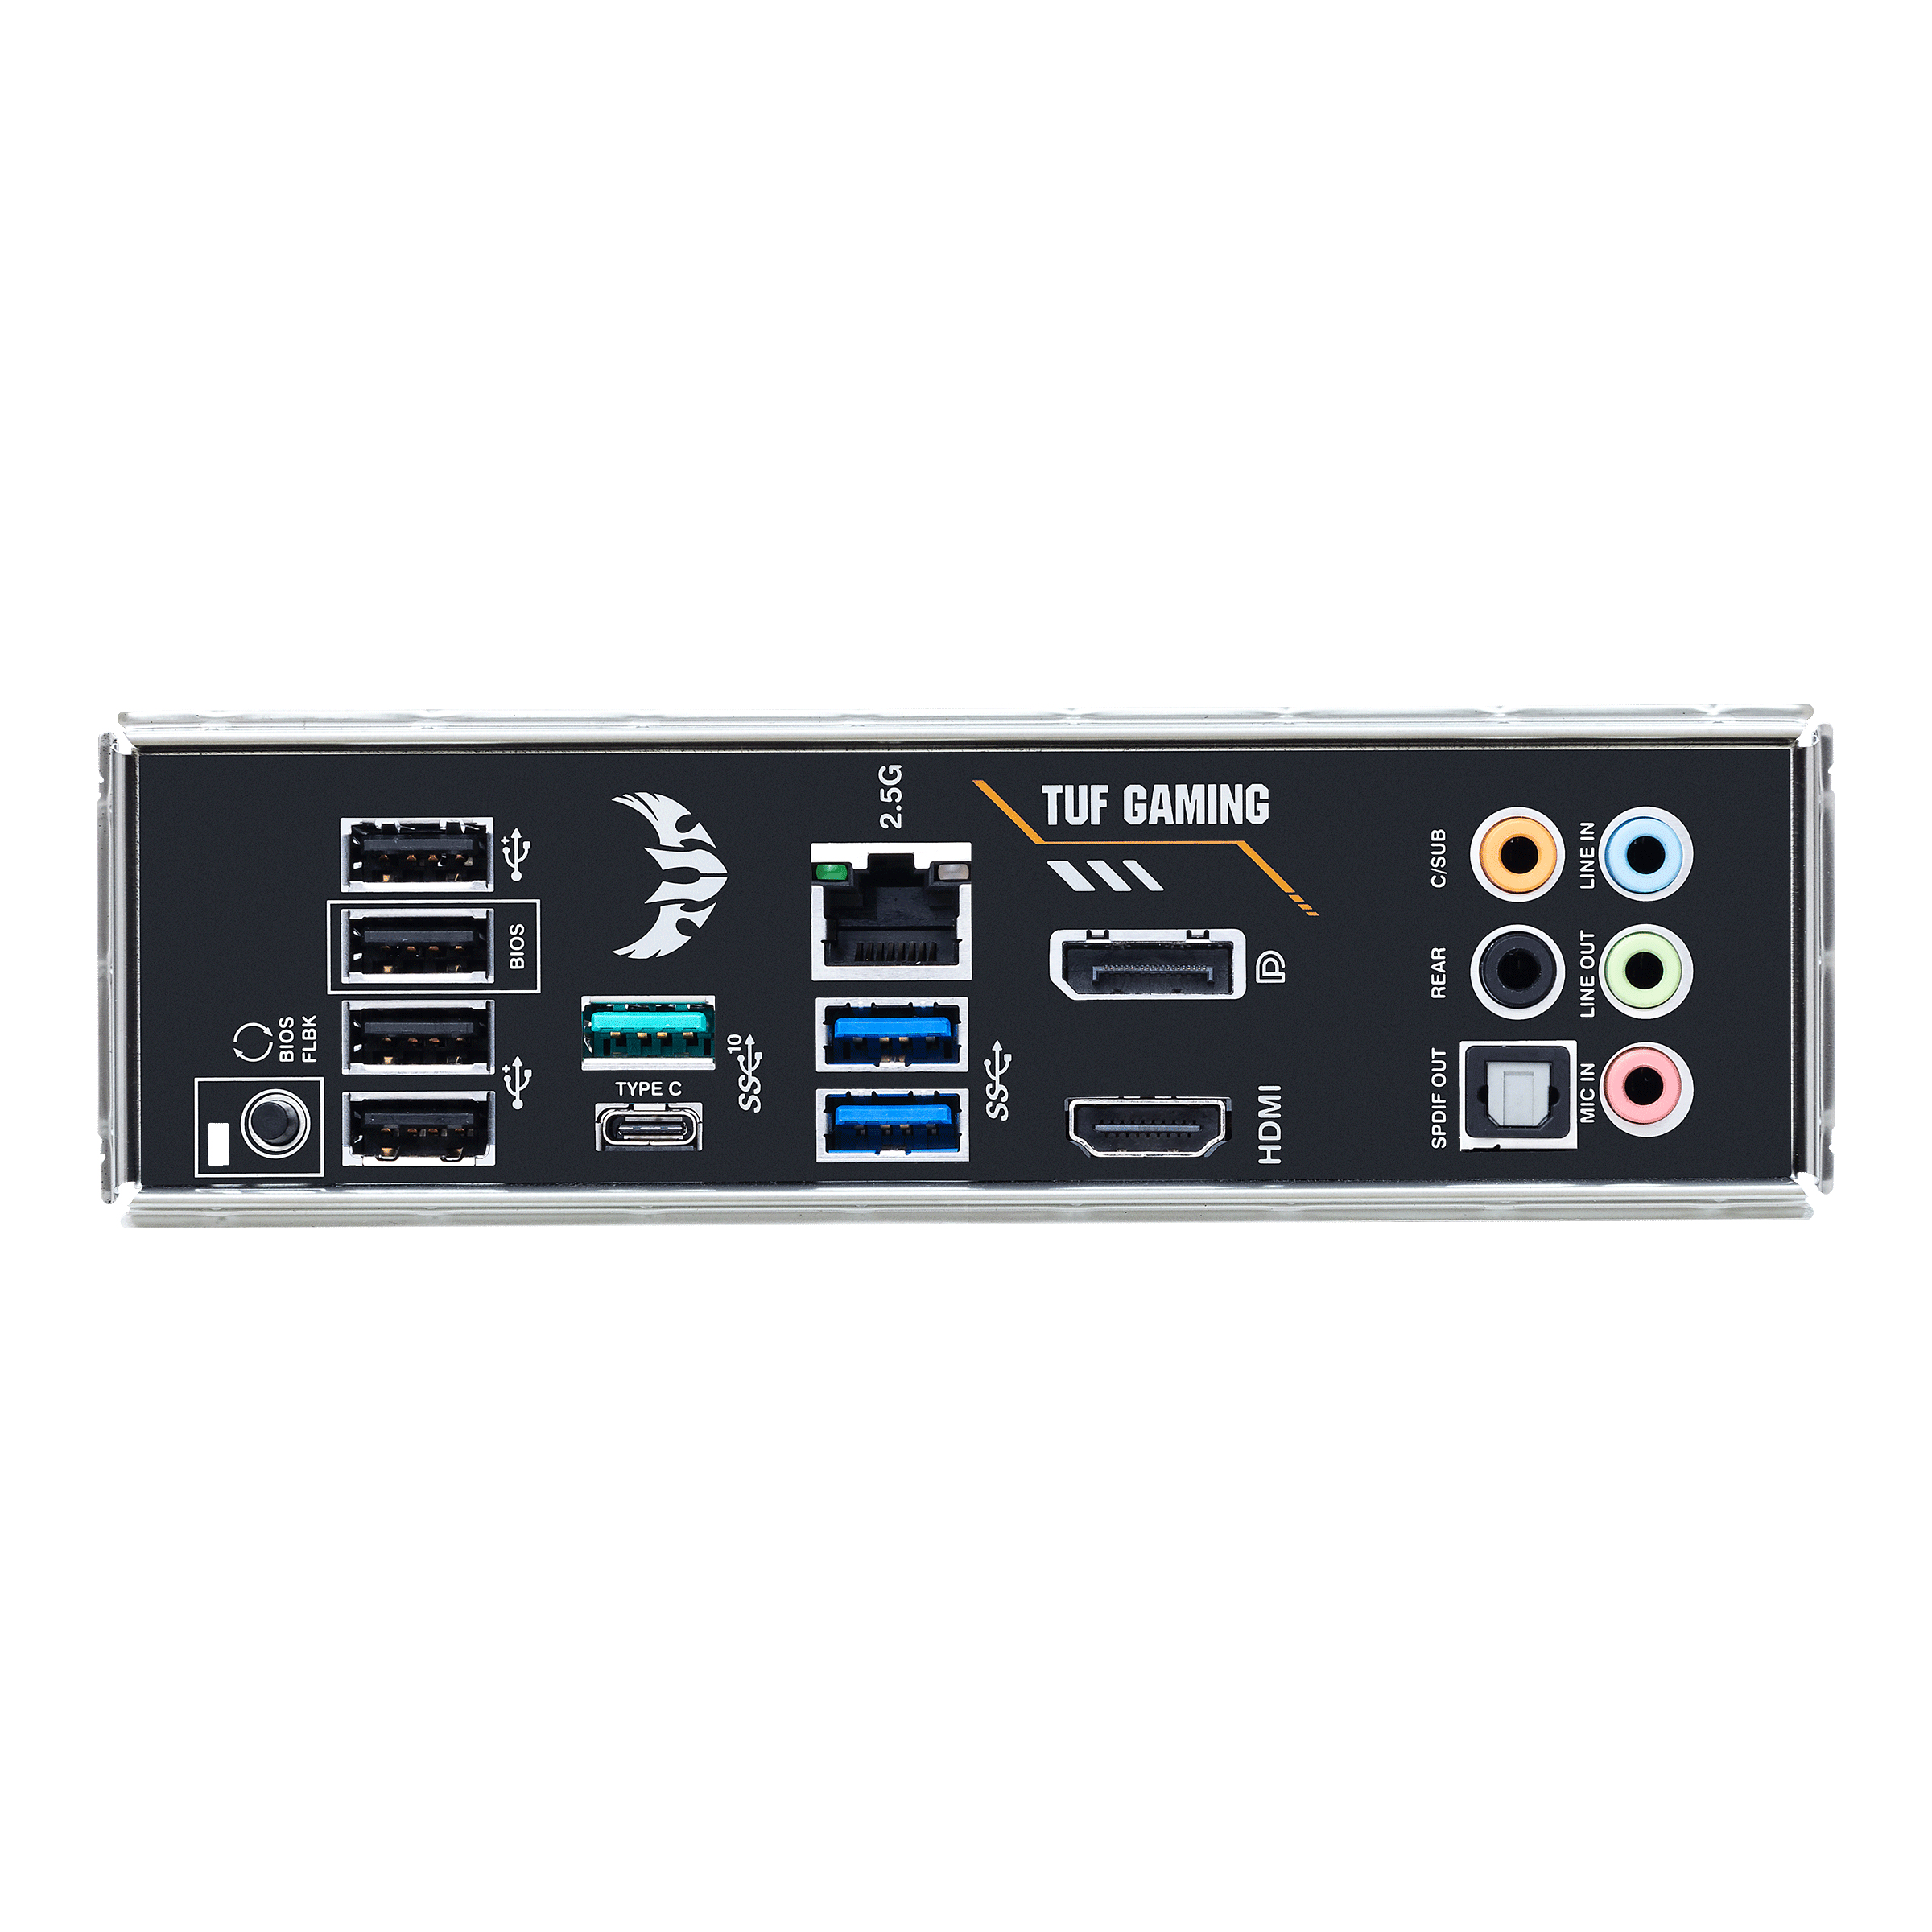 ASUS TUF GAMING B550-PRO - Motherboard - ATX - Socket AM4 - AMD B550 - USB-C Gen2, USB-C Gen1, USB 3.2 Gen 1, USB 3.2 Gen 2 - 2.5 Gigabit LAN - Onboard-Grafik (CPU erforderlich)